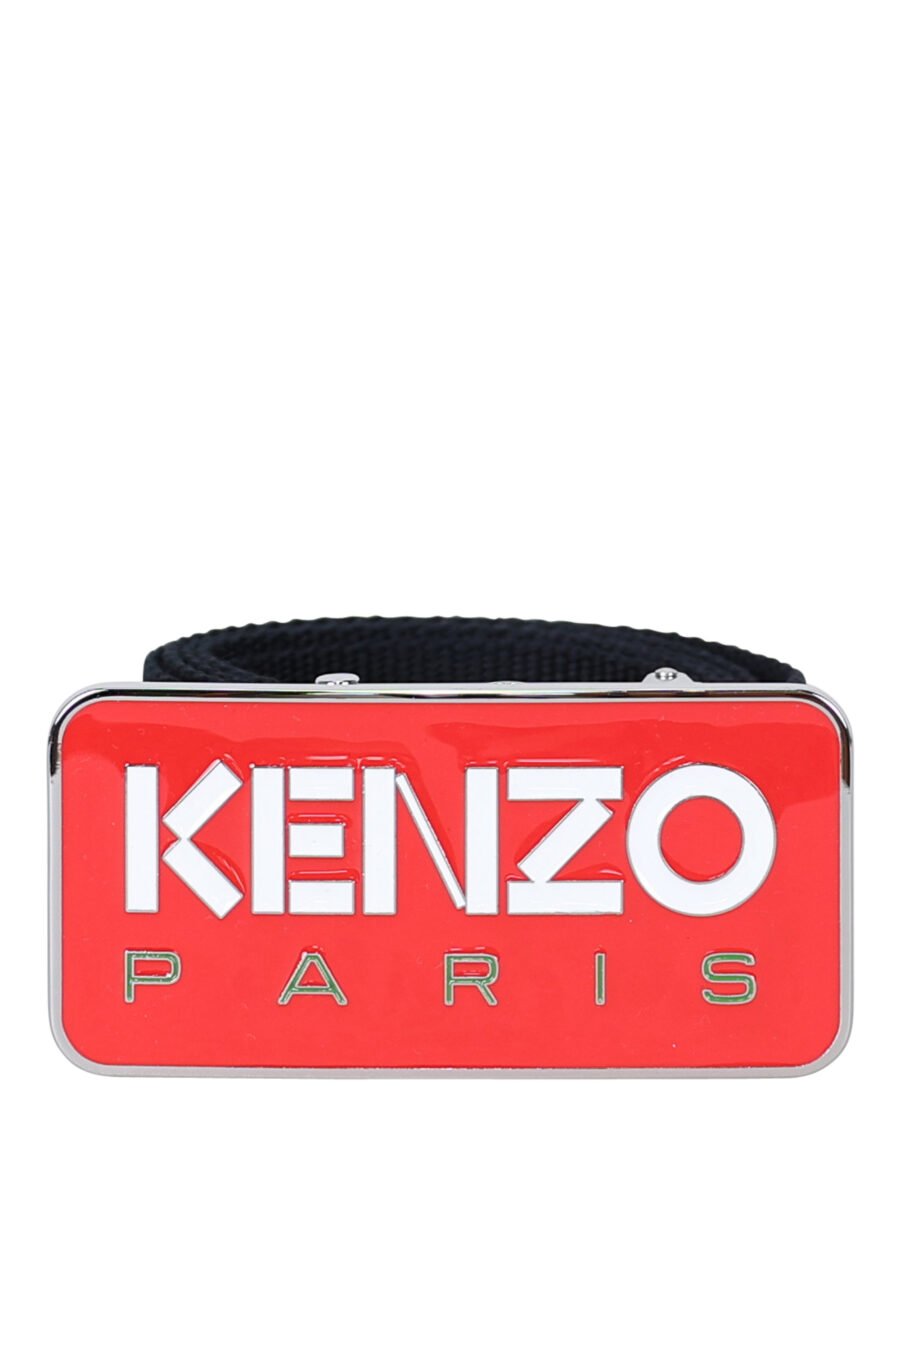 Cinto preto com fivela vermelha com o logótipo "kenzo paris" - 3612230547339